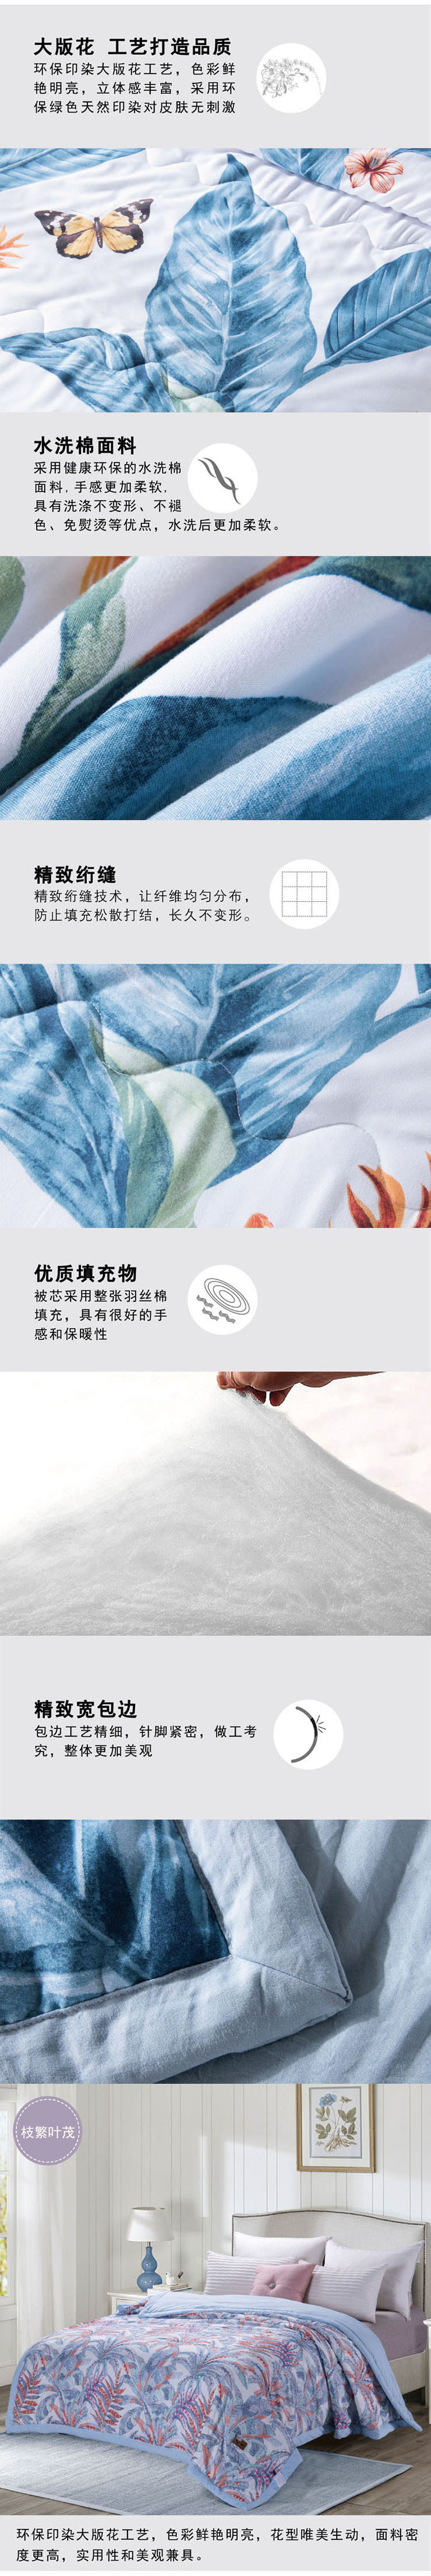 芳恩家纺 FN-B6001 B6001-1 叶语缤纷水洗棉被